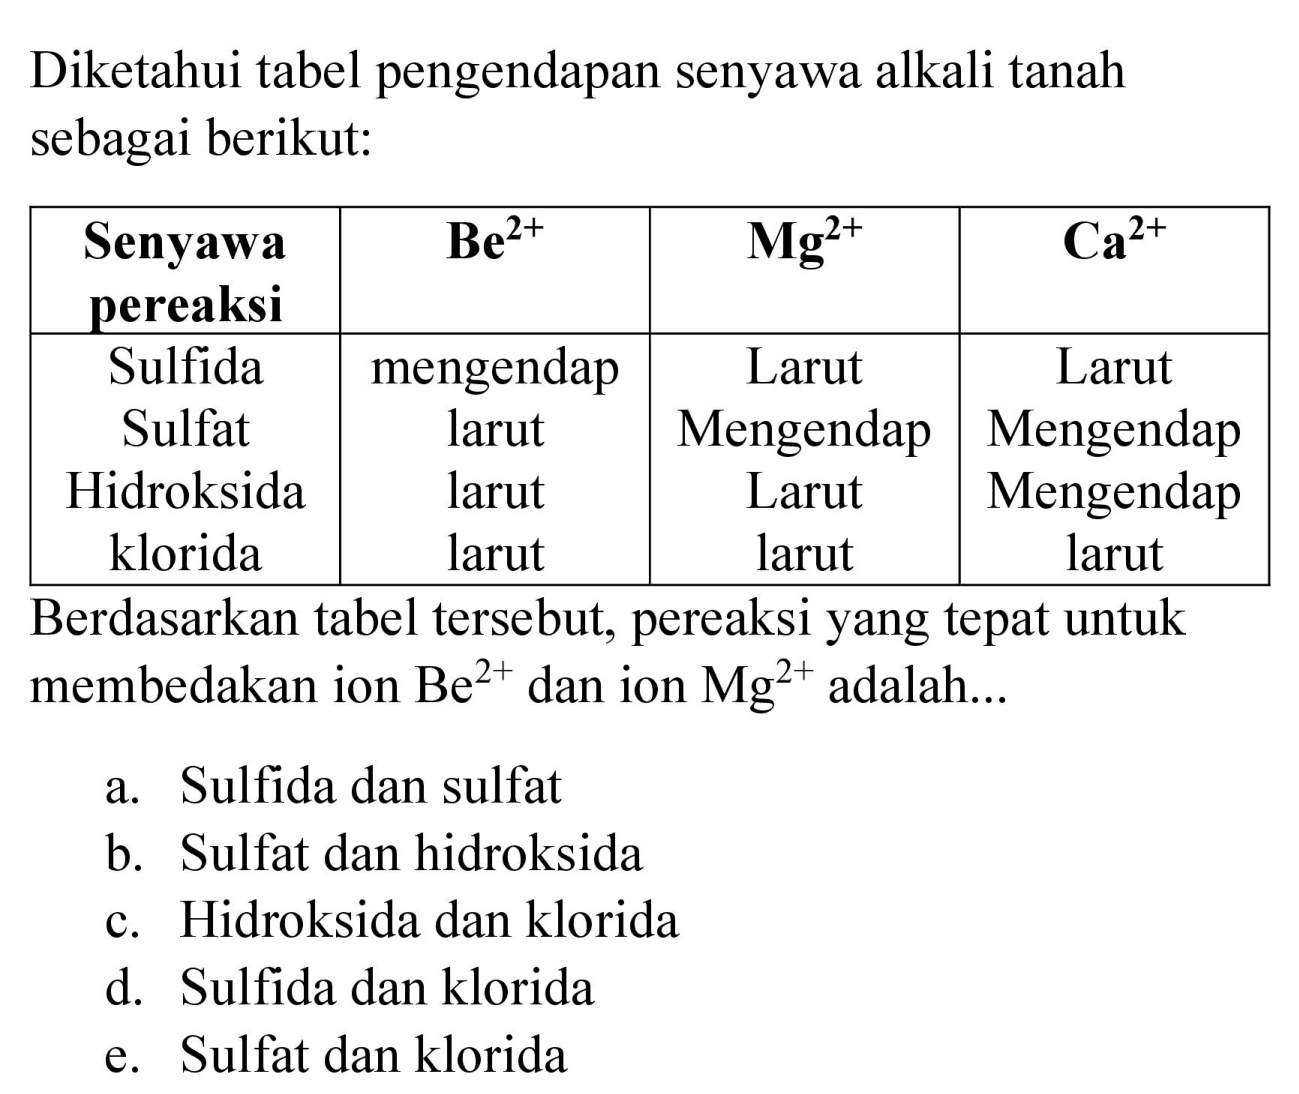 Diketahui tabel pengendapan senyawa alkali tanah sebagai berikut:
Berdasarkan tabel tersebut, pereaksi yang tepat untuk membedakan ion  Be^(2+)  dan ion  Mg^(2+)  adalah...
a. Sulfida dan sulfat
b. Sulfat dan hidroksida
c. Hidroksida dan klorida
d. Sulfida dan klorida
e. Sulfat dan klorida